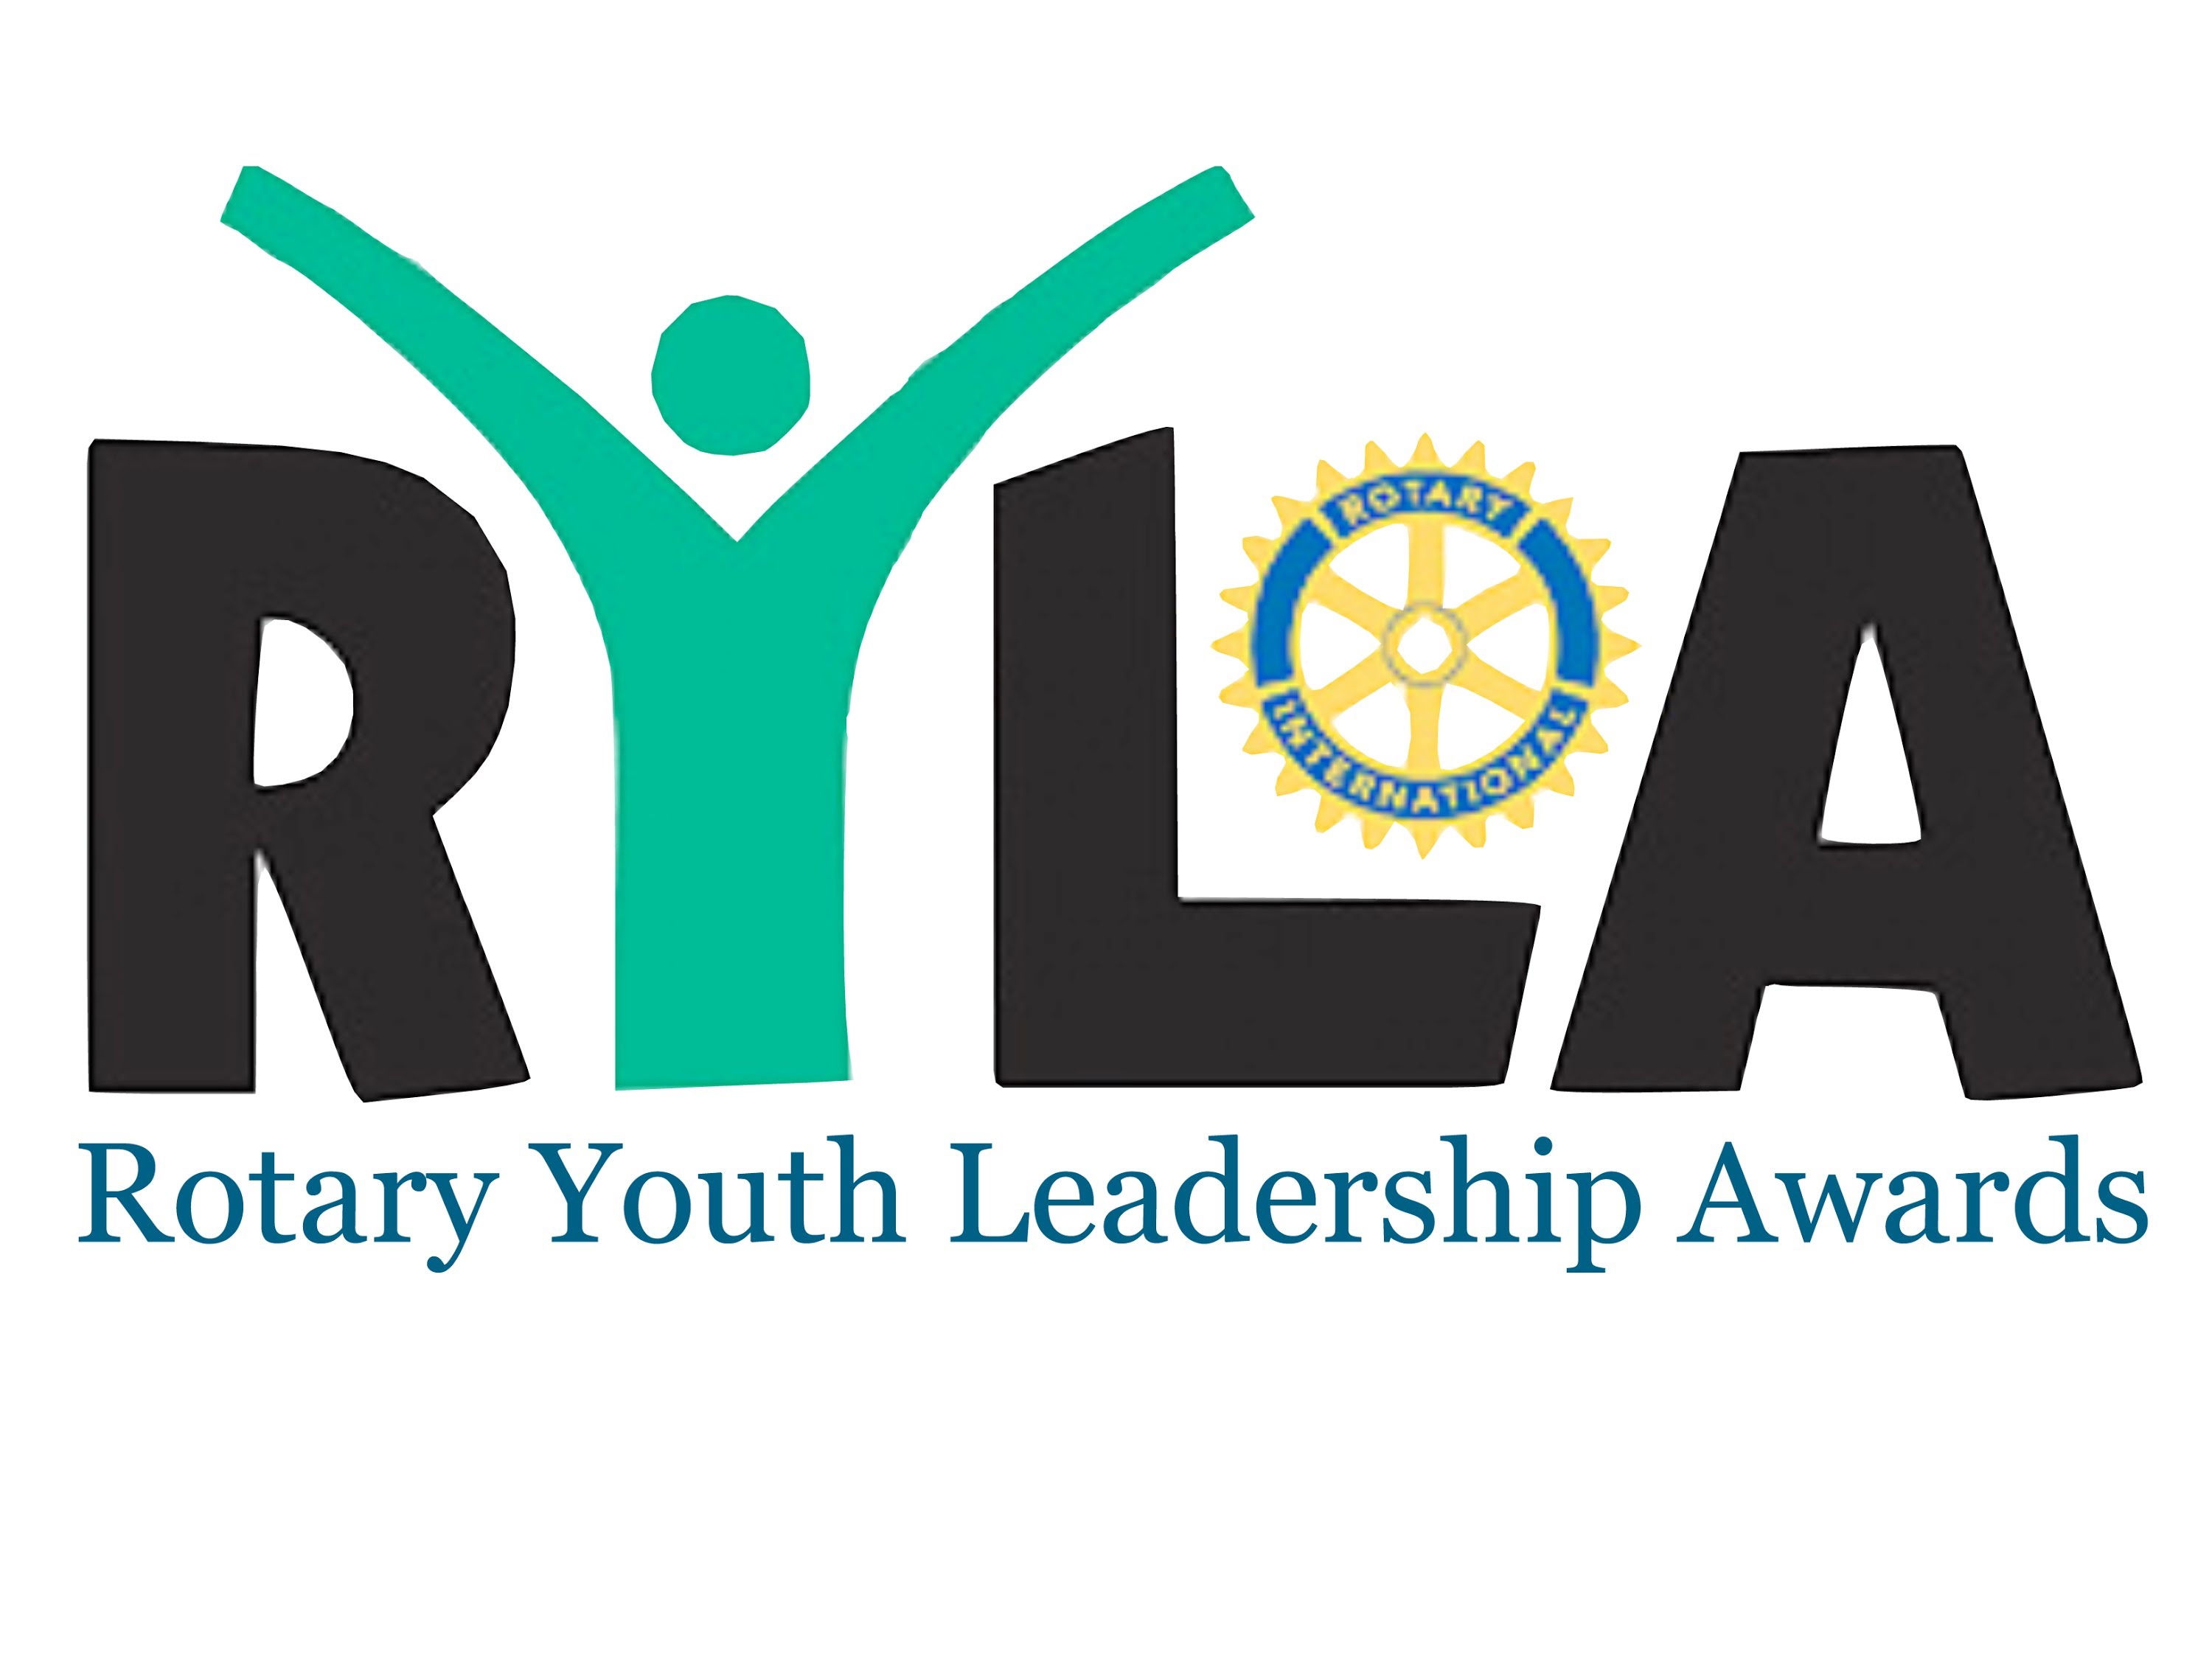 TABĂRA ROTARY YOUTH LEADERSHIP AWARDS (RYLA)